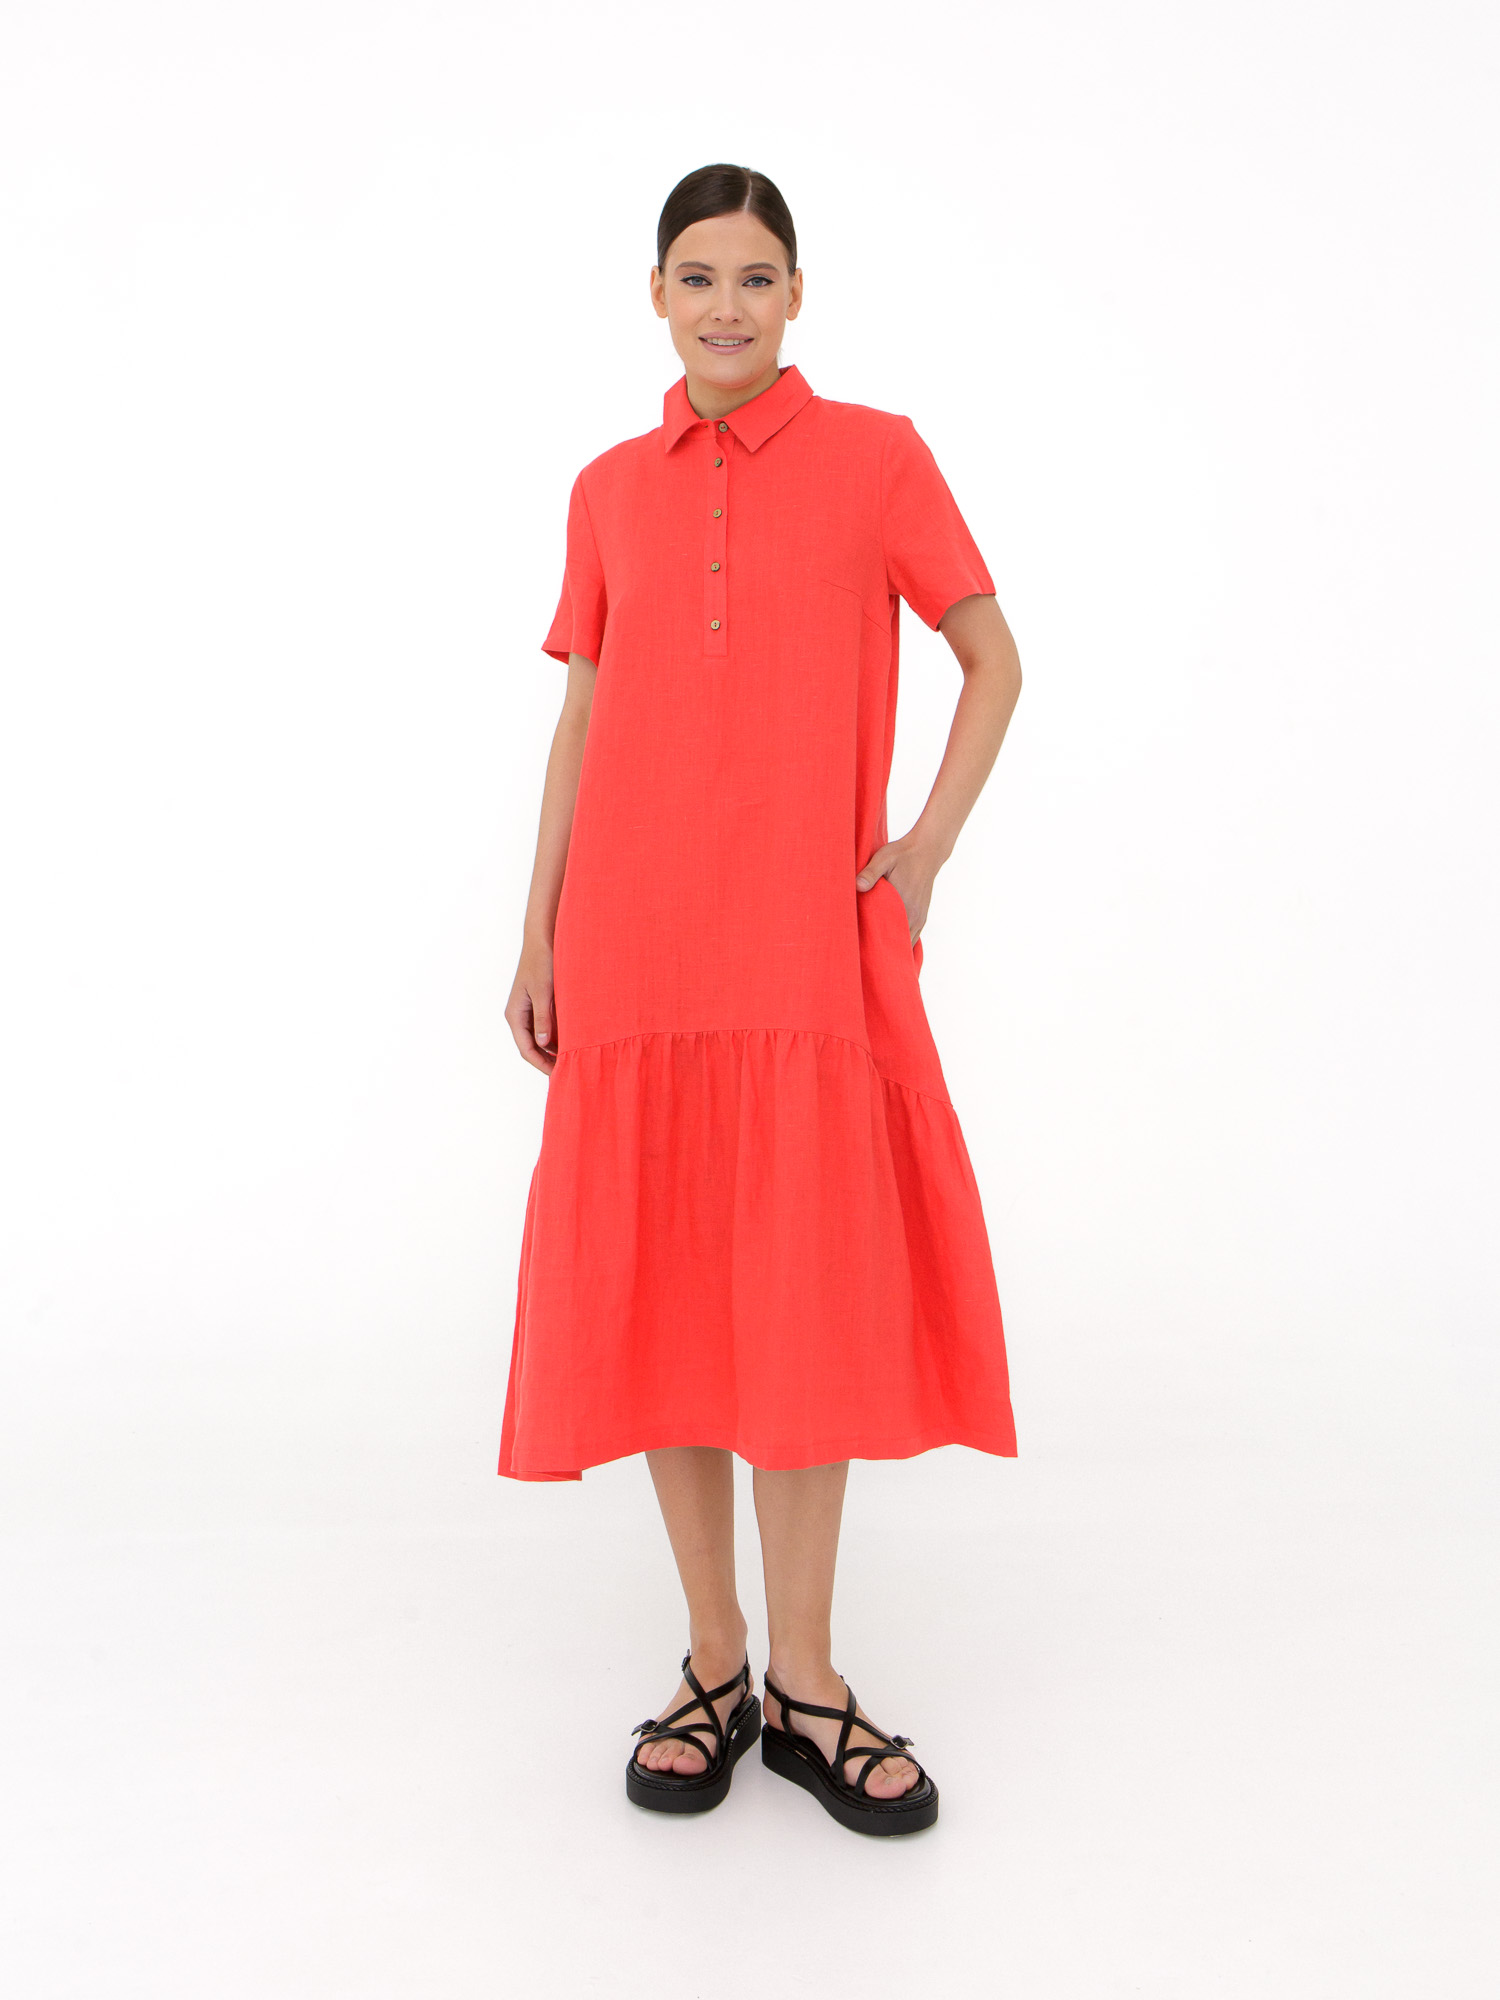 Платье женское КЛ-7521А-ИЛ23 коралловое 46 ELECTRA STYLE, цвет коралловый, размер 46 - фото 1